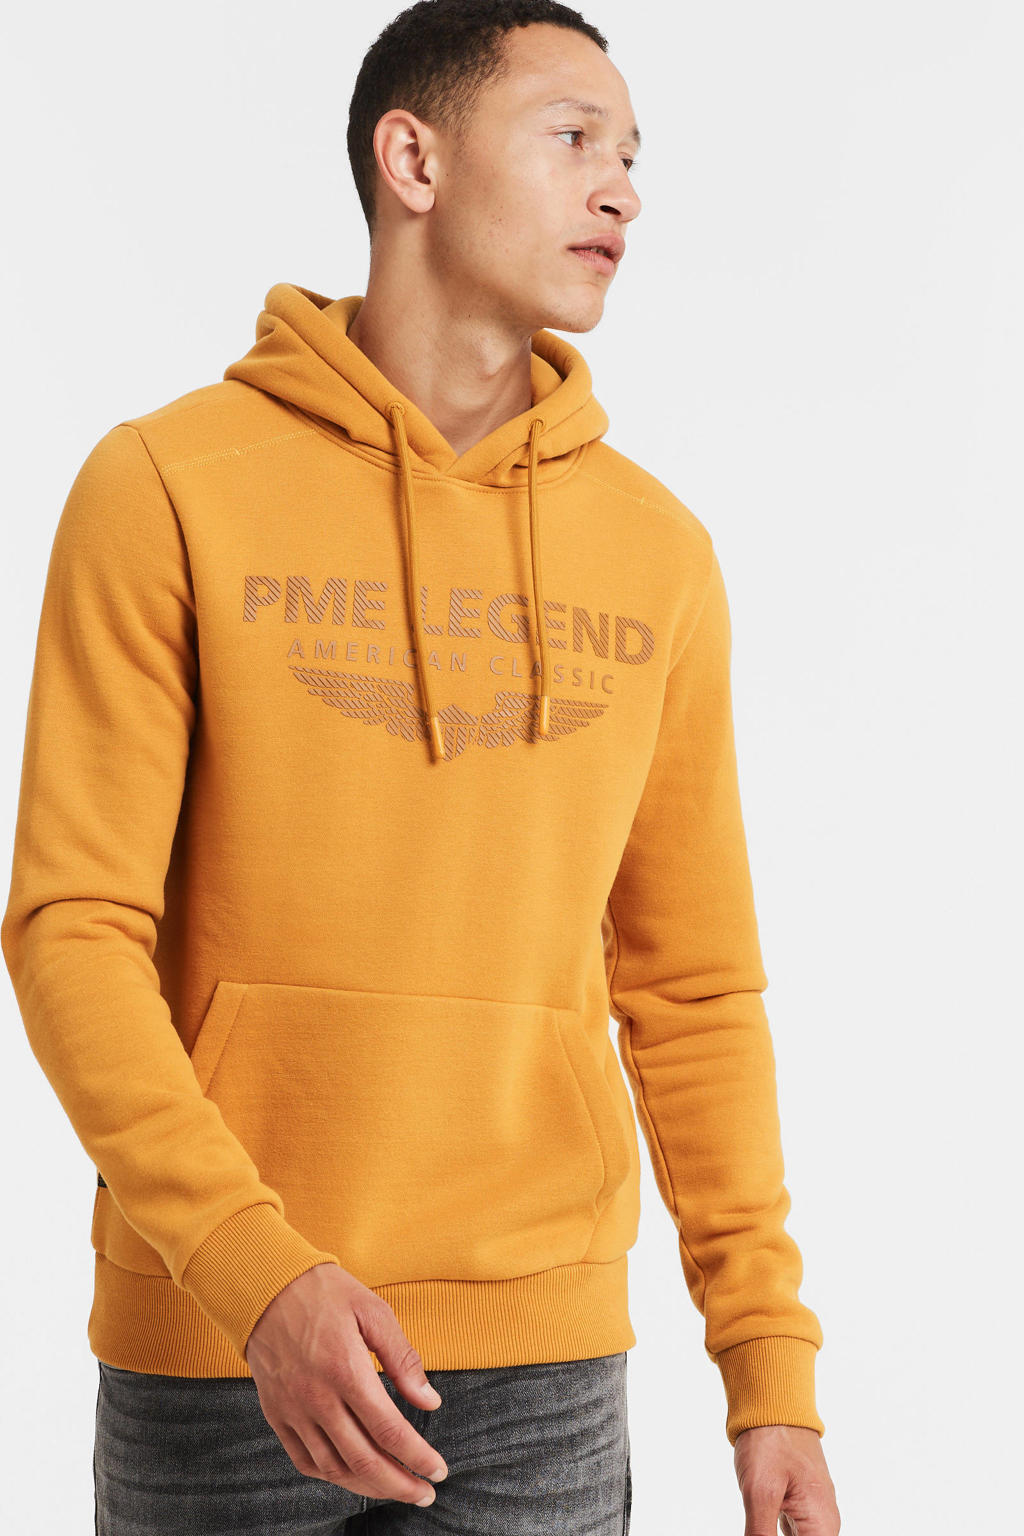 PME Legend hoodie met logo 2005 golden oak